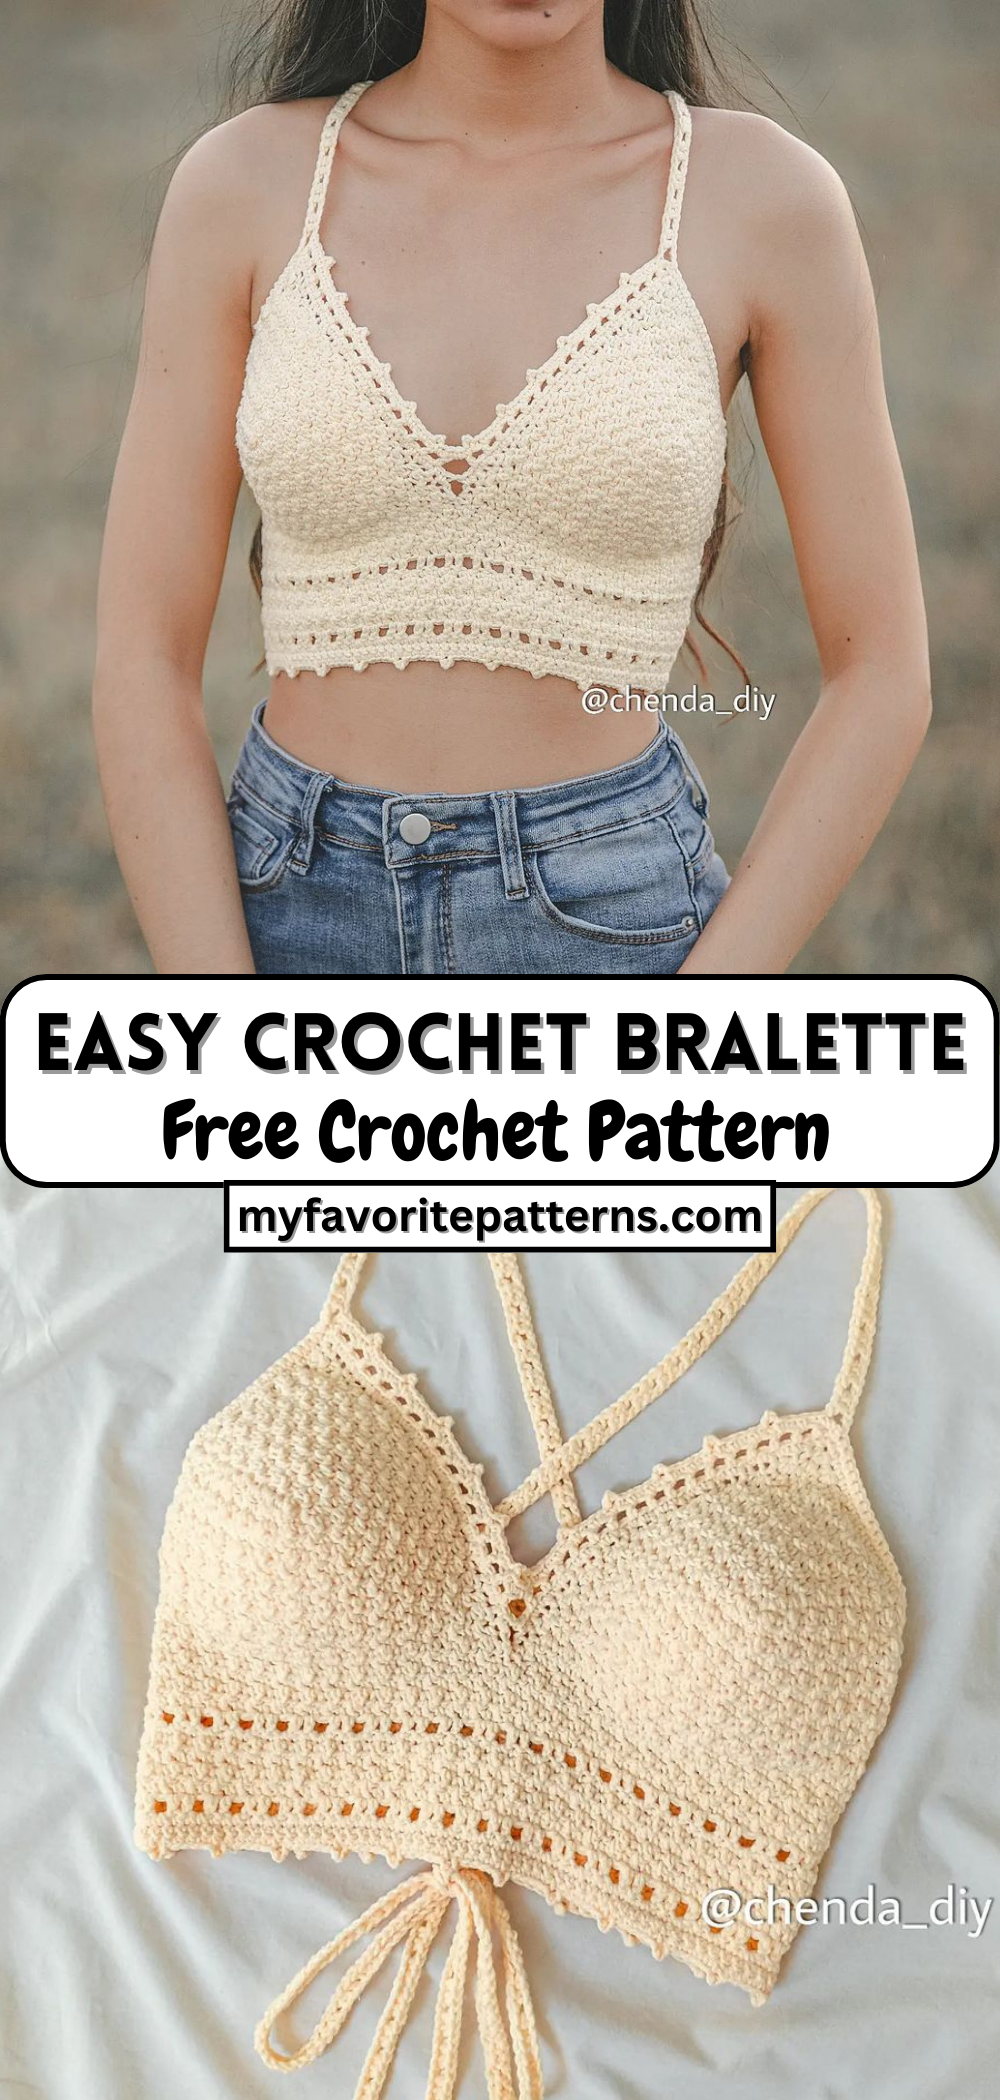 Easy Crochet Bralette Tutorial - Free Crochet Pattern - MyFavoritePatterns